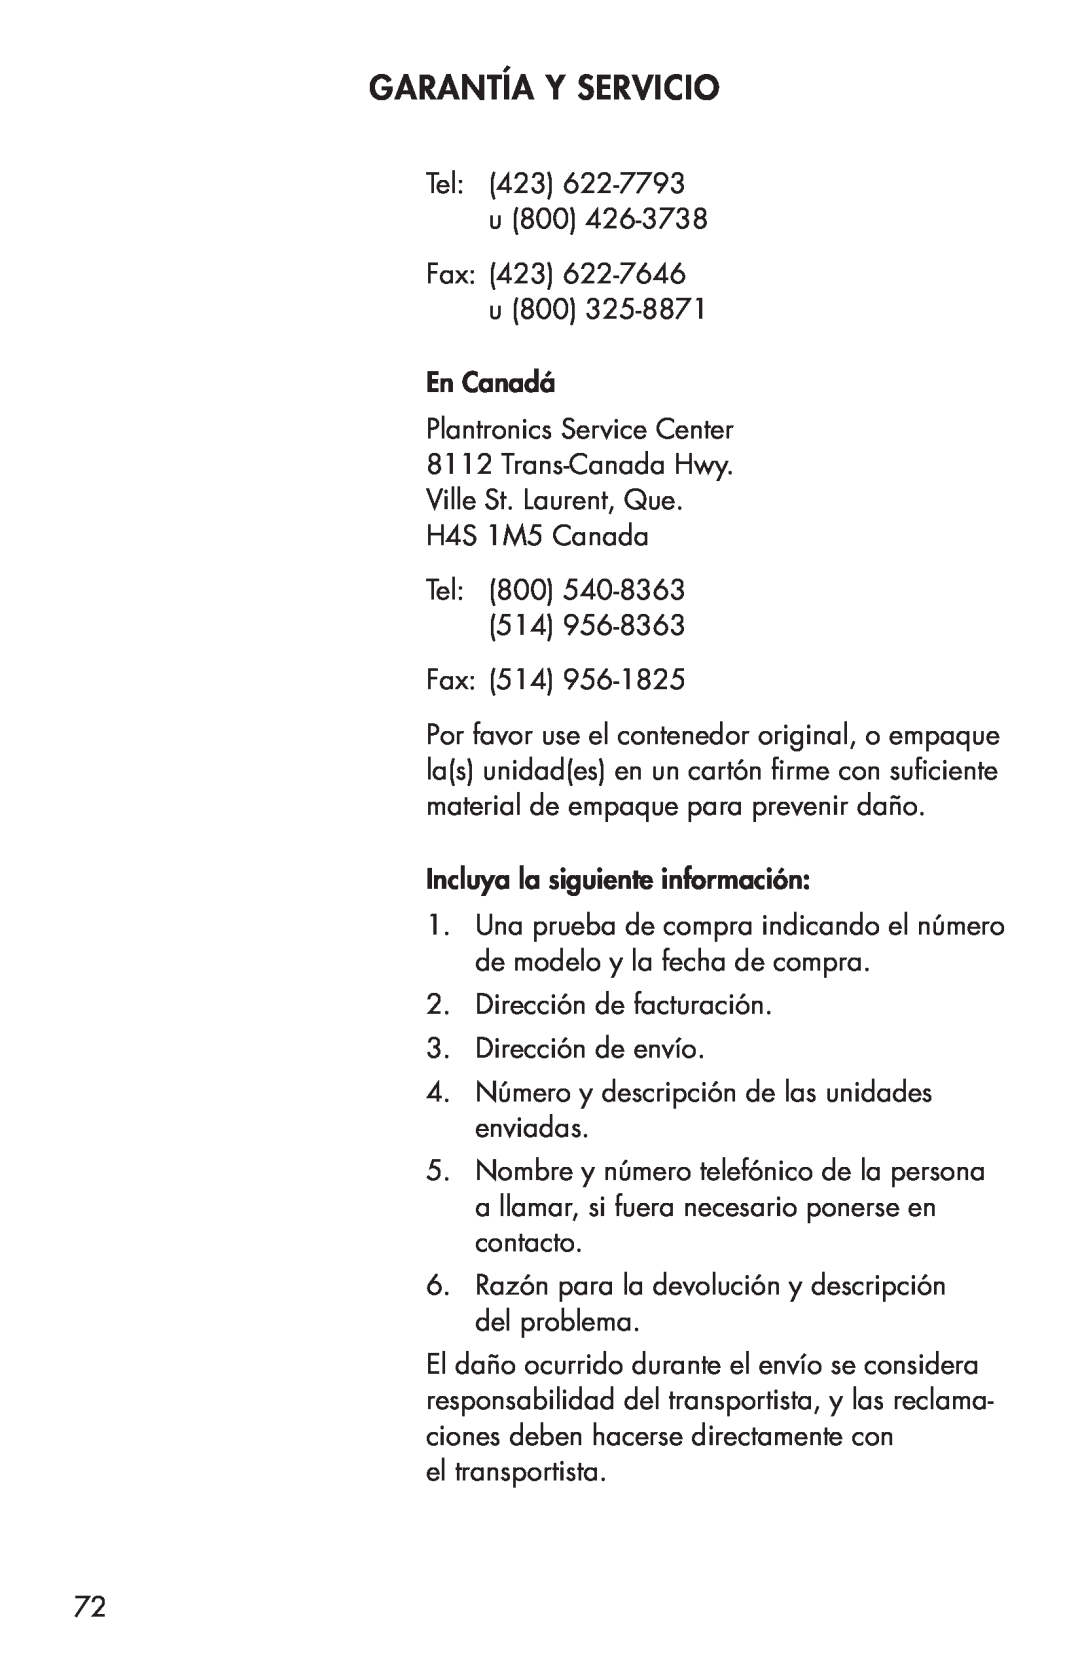 Clarity C4205 manual Garantía Y Servicio, Tel 423 u 800 Fax 423 u 800 En Canadá Plantronics Service Center 